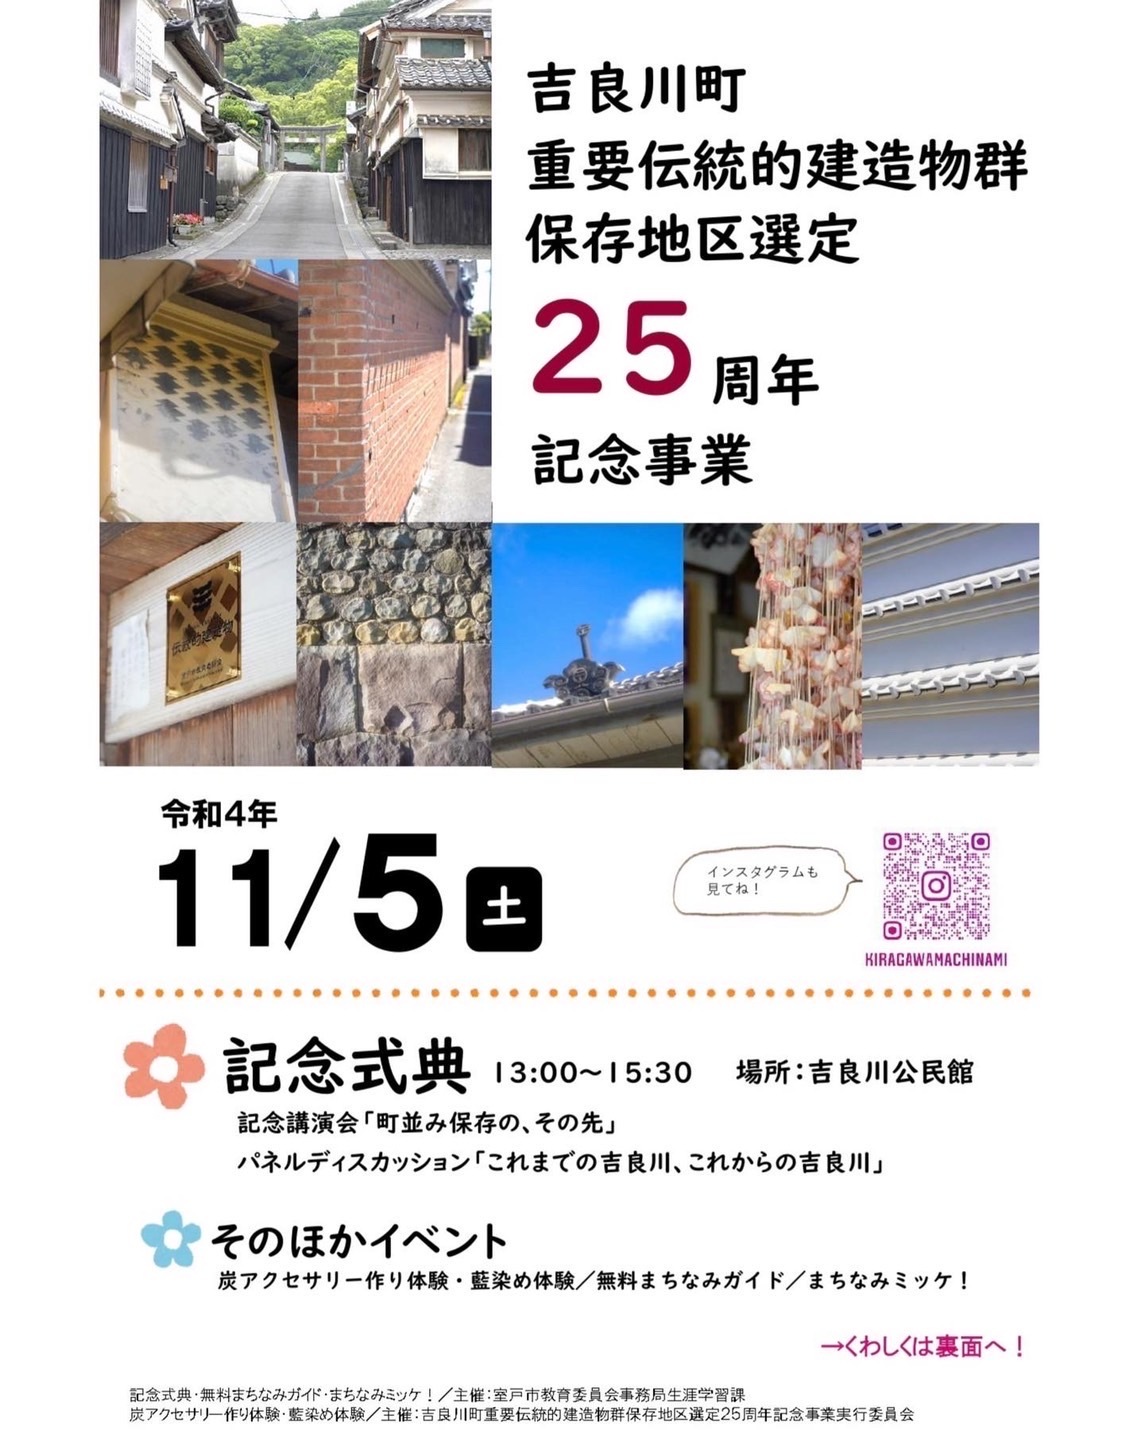 記念式典は吉良川公民館で行われます。